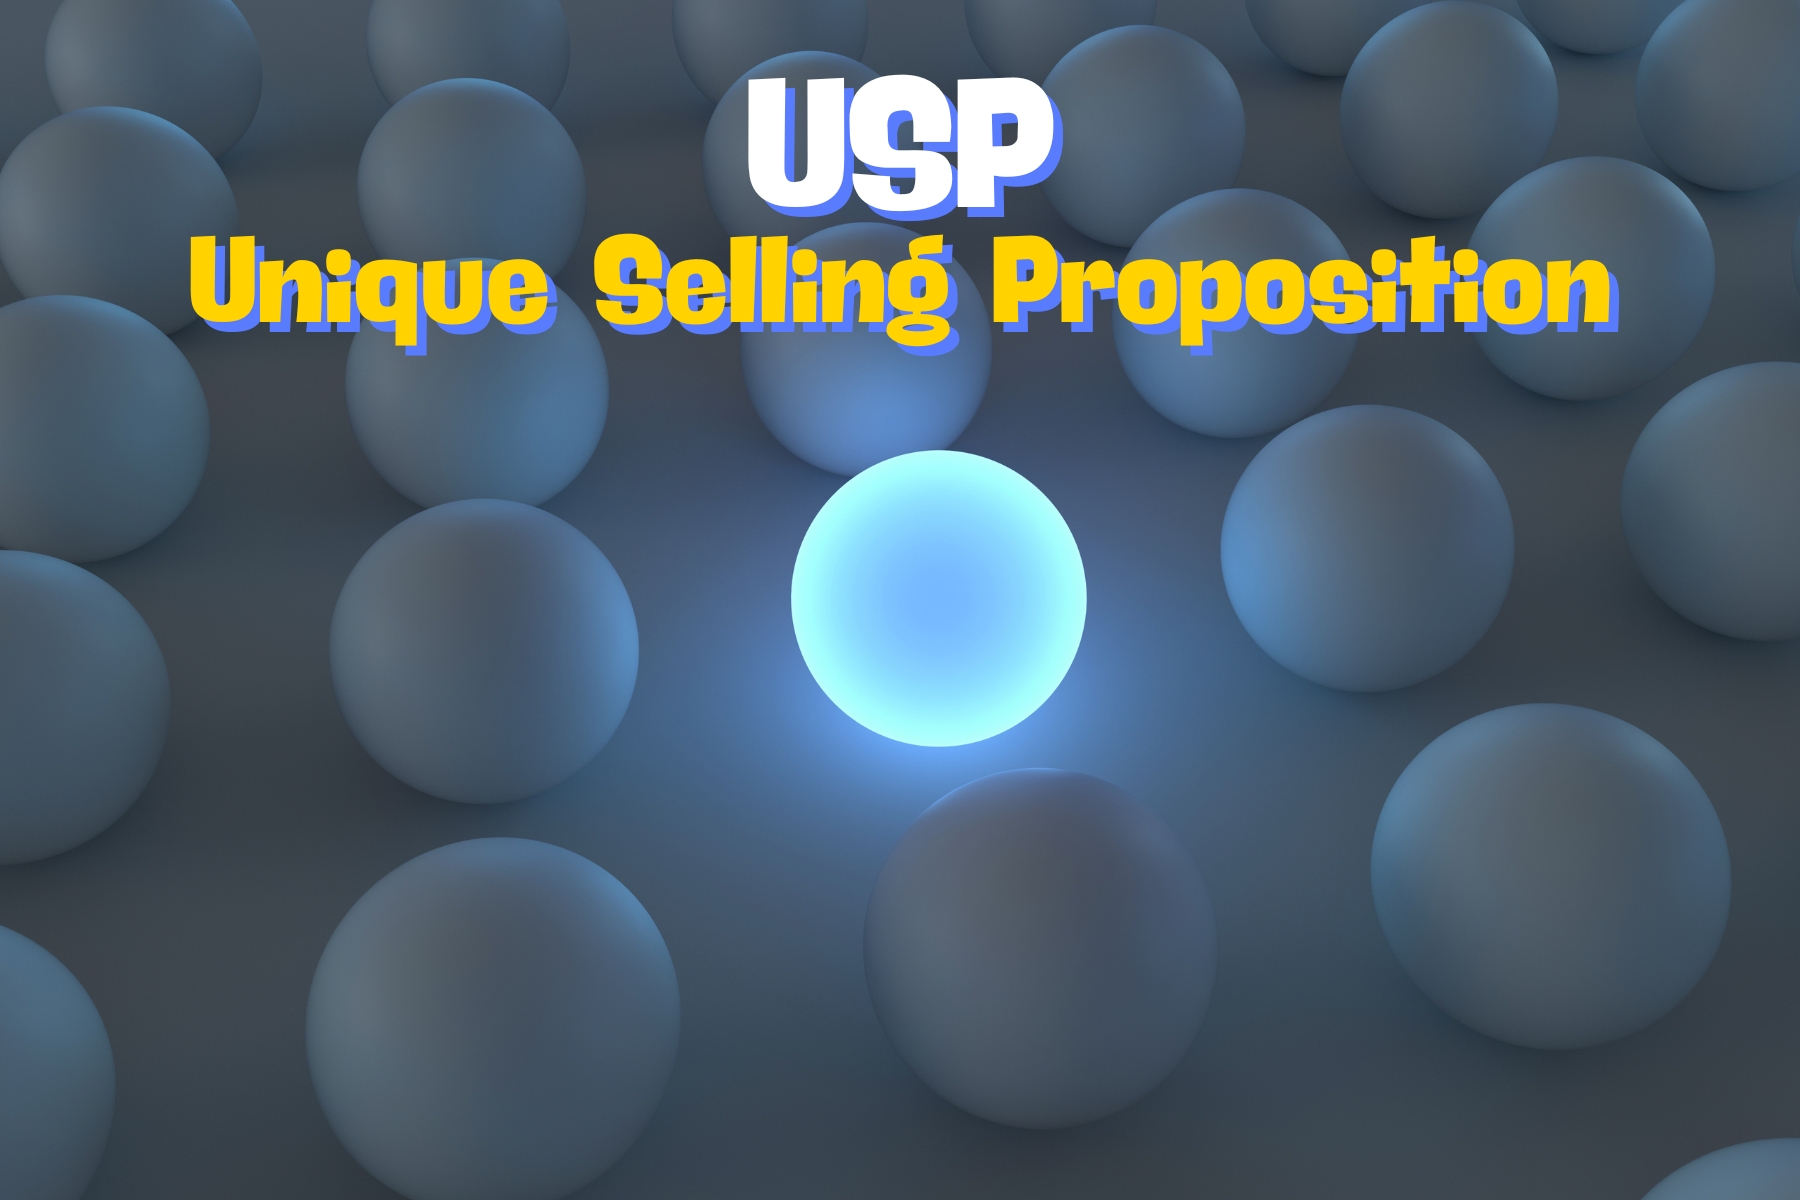 Entenda o que é a Unique Selling Proposition (USP) e sua função essencial para diferenciar e comunicar o valor do seu produto no mercado.